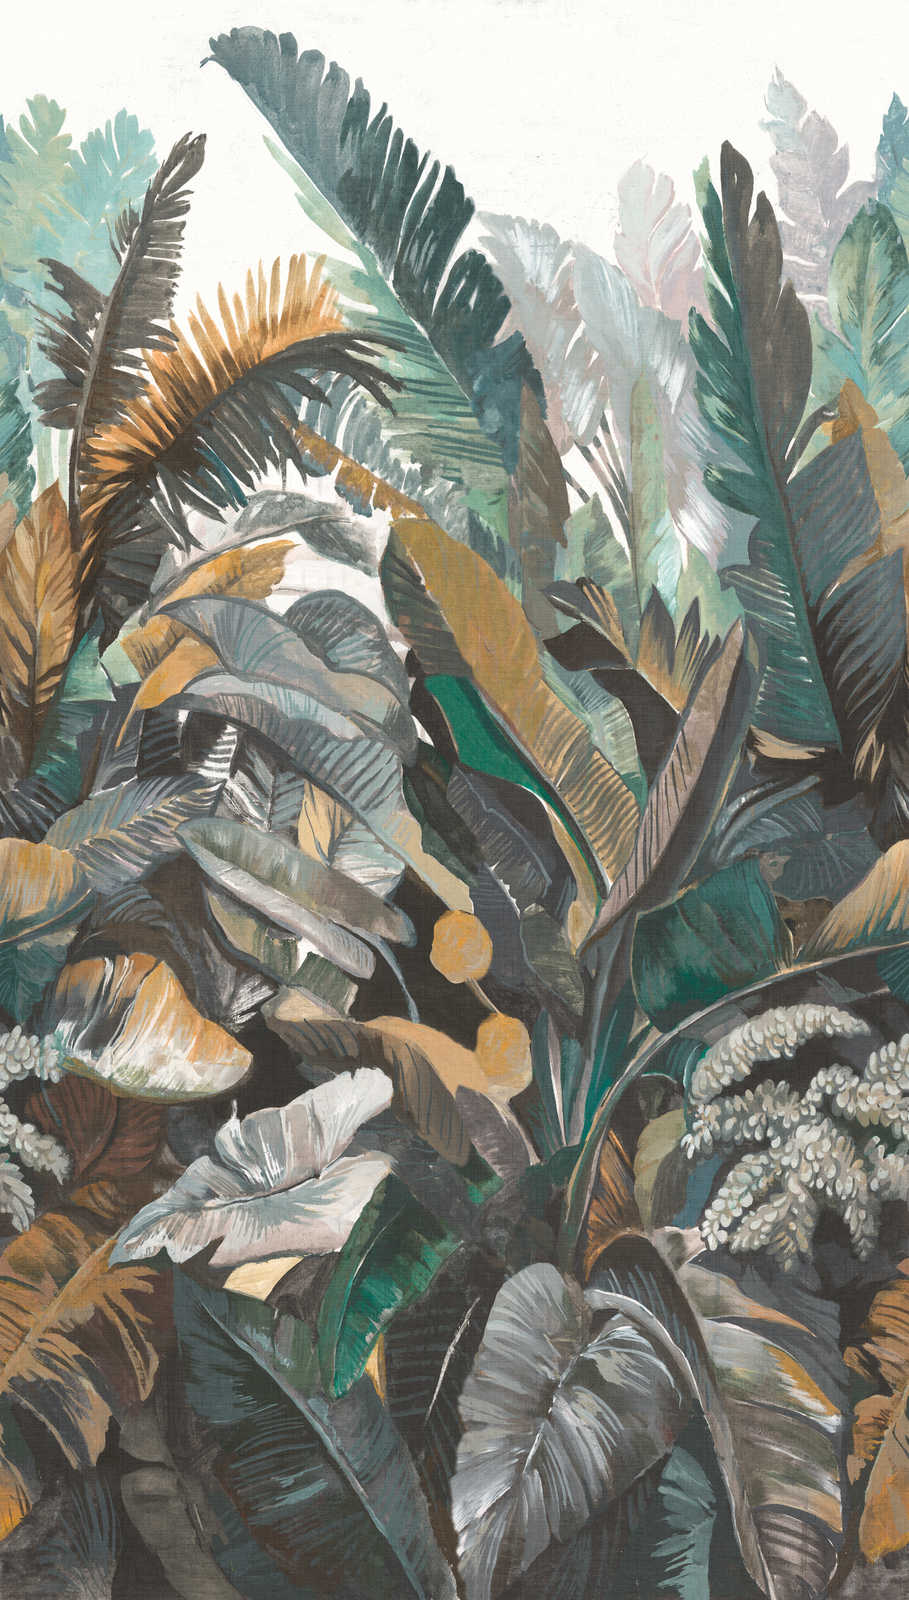             Vliesbehang met groot jungle-motief - groen, beige
        